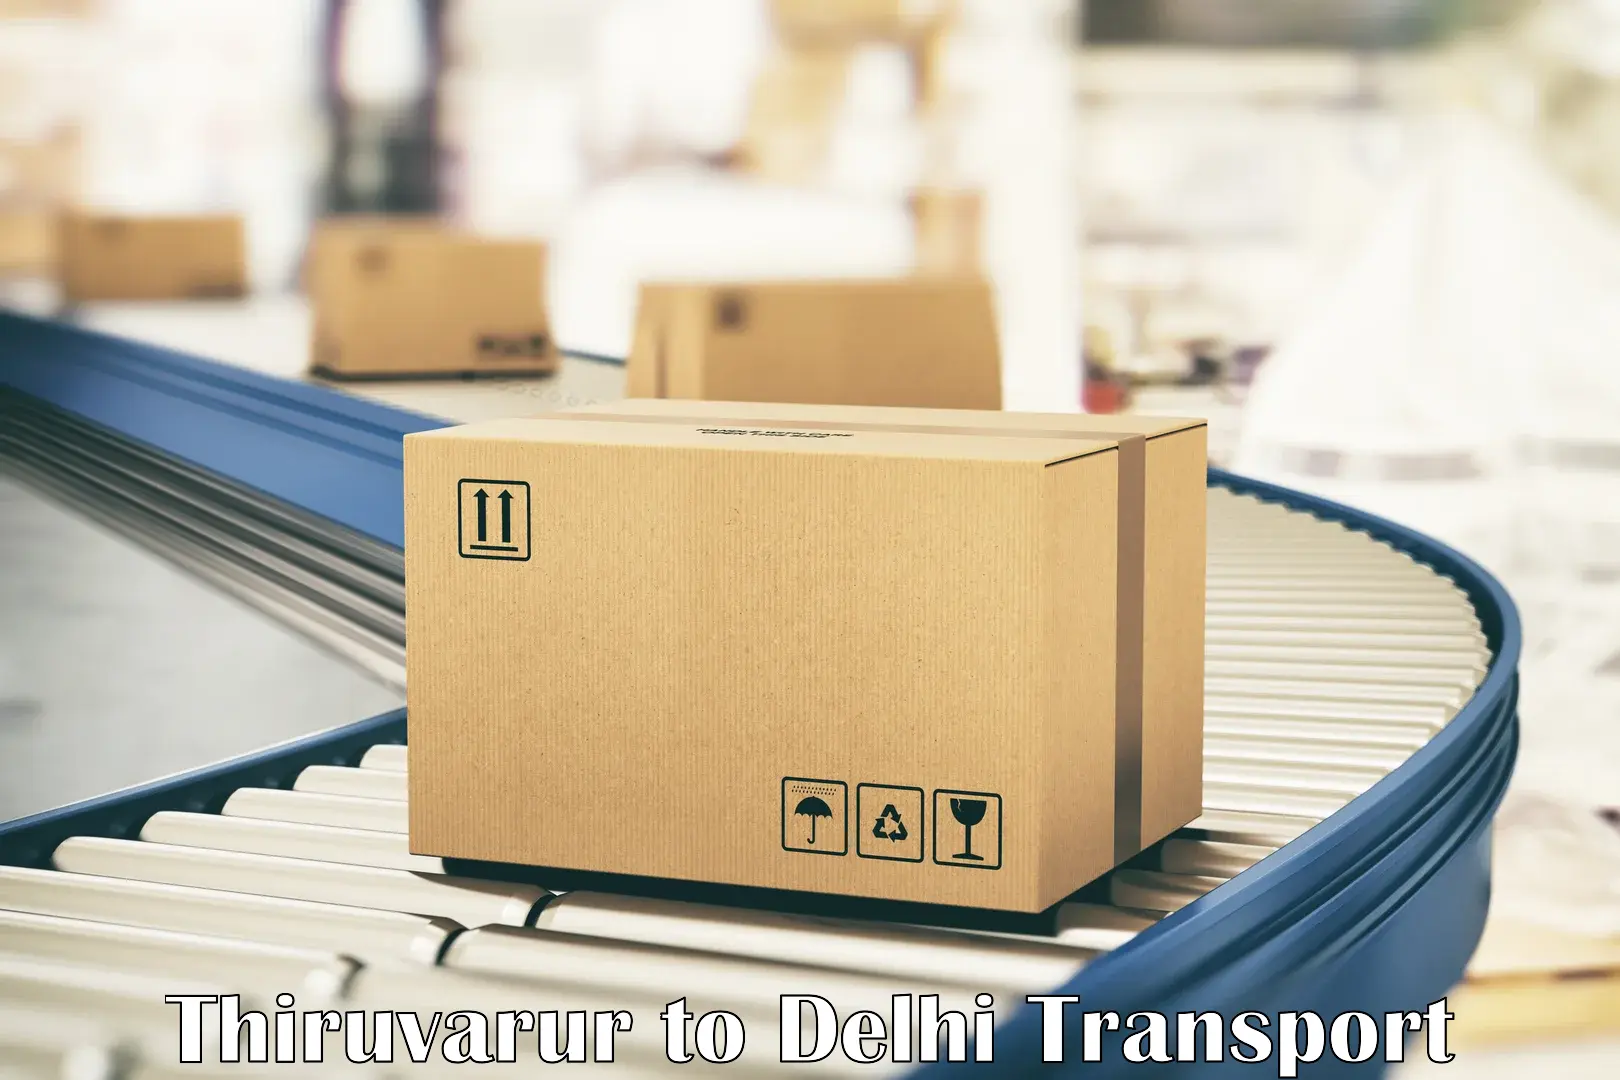 India truck logistics services Thiruvarur to Delhi